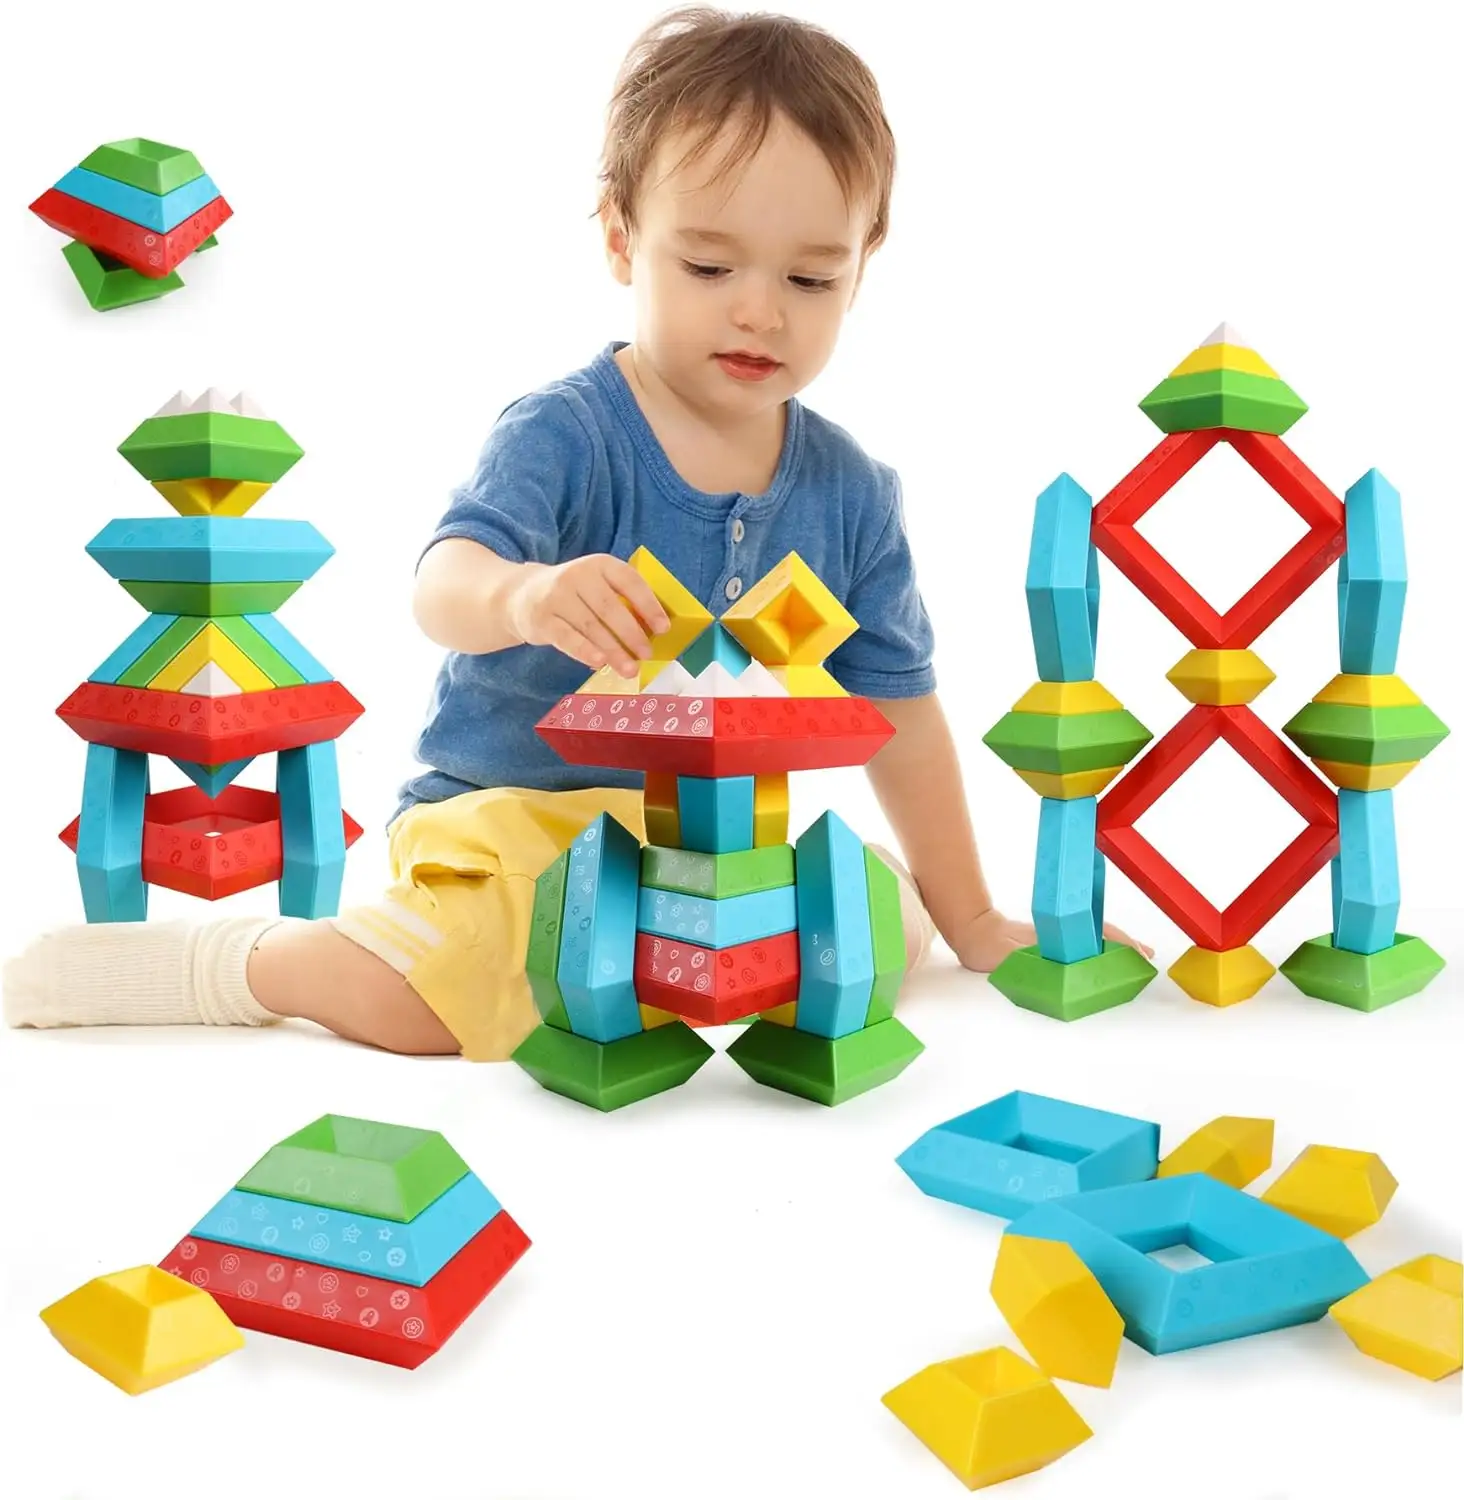 Juguete Montessori para Apilar Pirámide, Bloques de Construcción, Rompecabezas 3D, Juguetes Preescolares para Niños, 30 Unidades